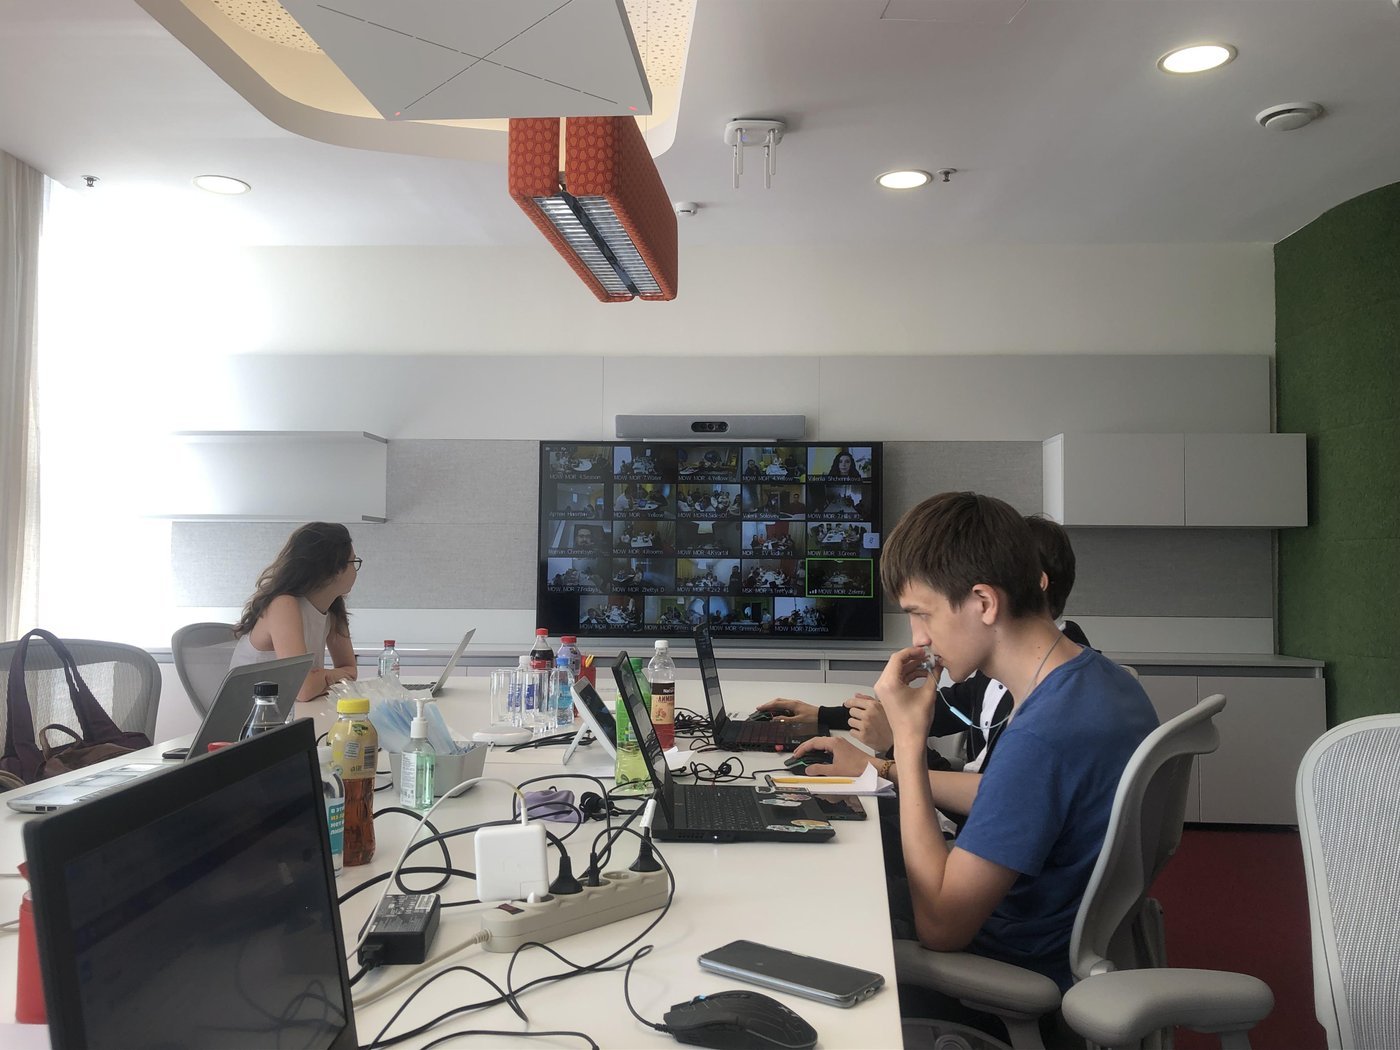 В конце каждого спринта мы собирались в переговорках Яндекса на хакатоны, после которых презентовали свои результаты коллегам и кураторам.